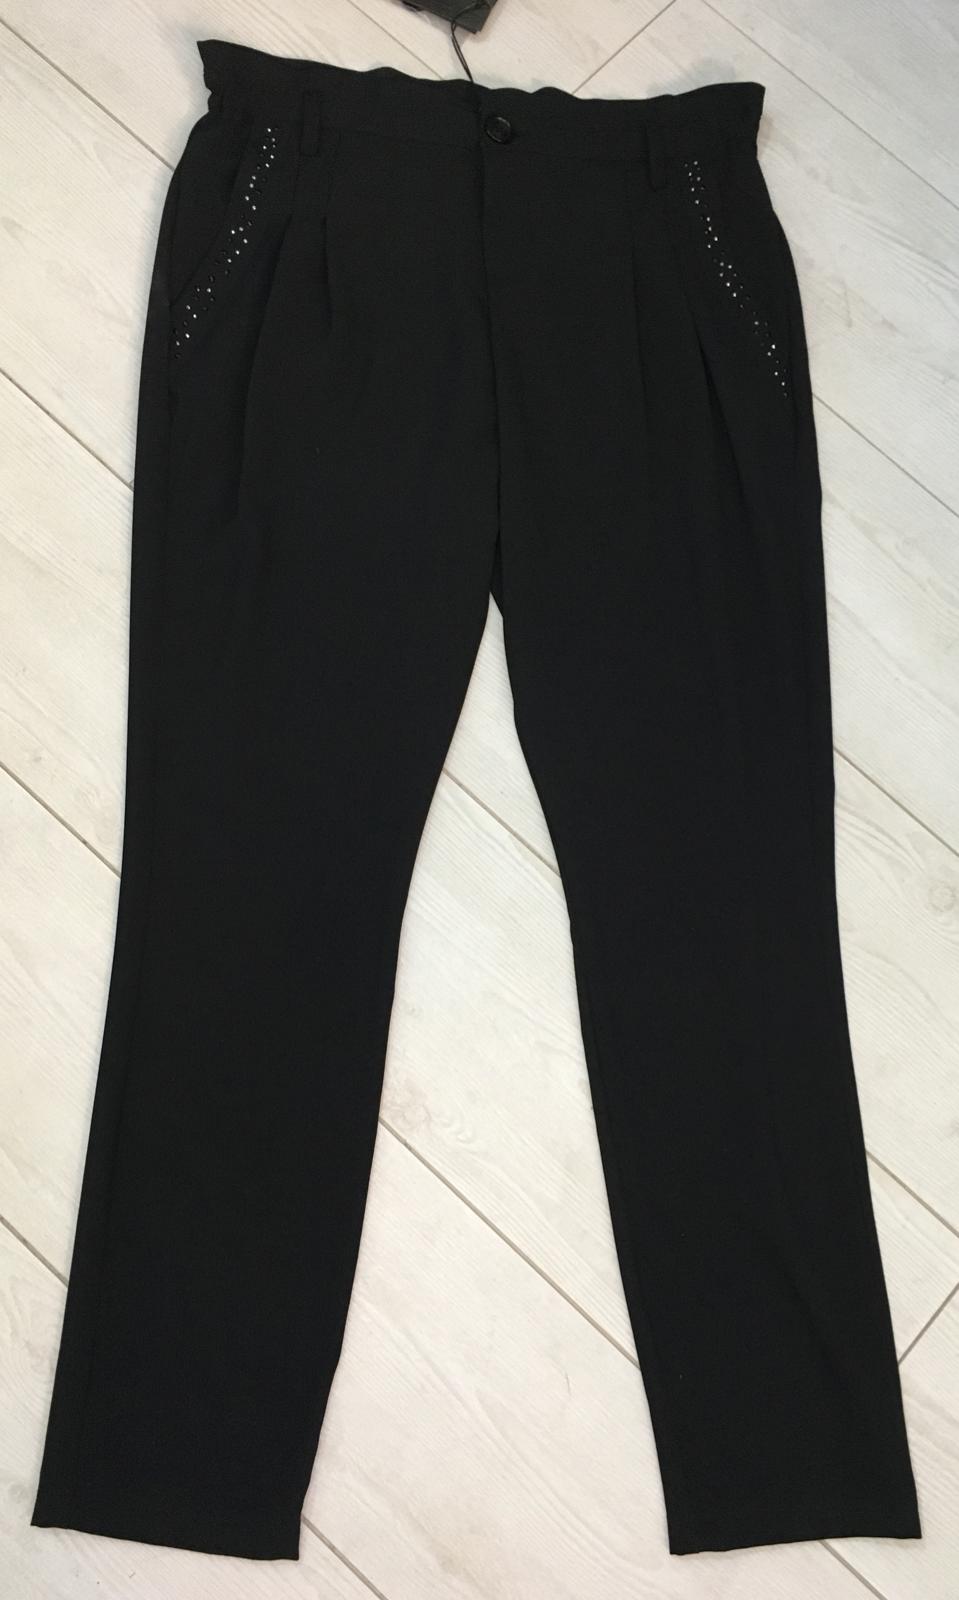 Pantalone nero art 34D22304 Donna Gaudi Autunno Inverno 2021 Outlet - Denny Store Italia